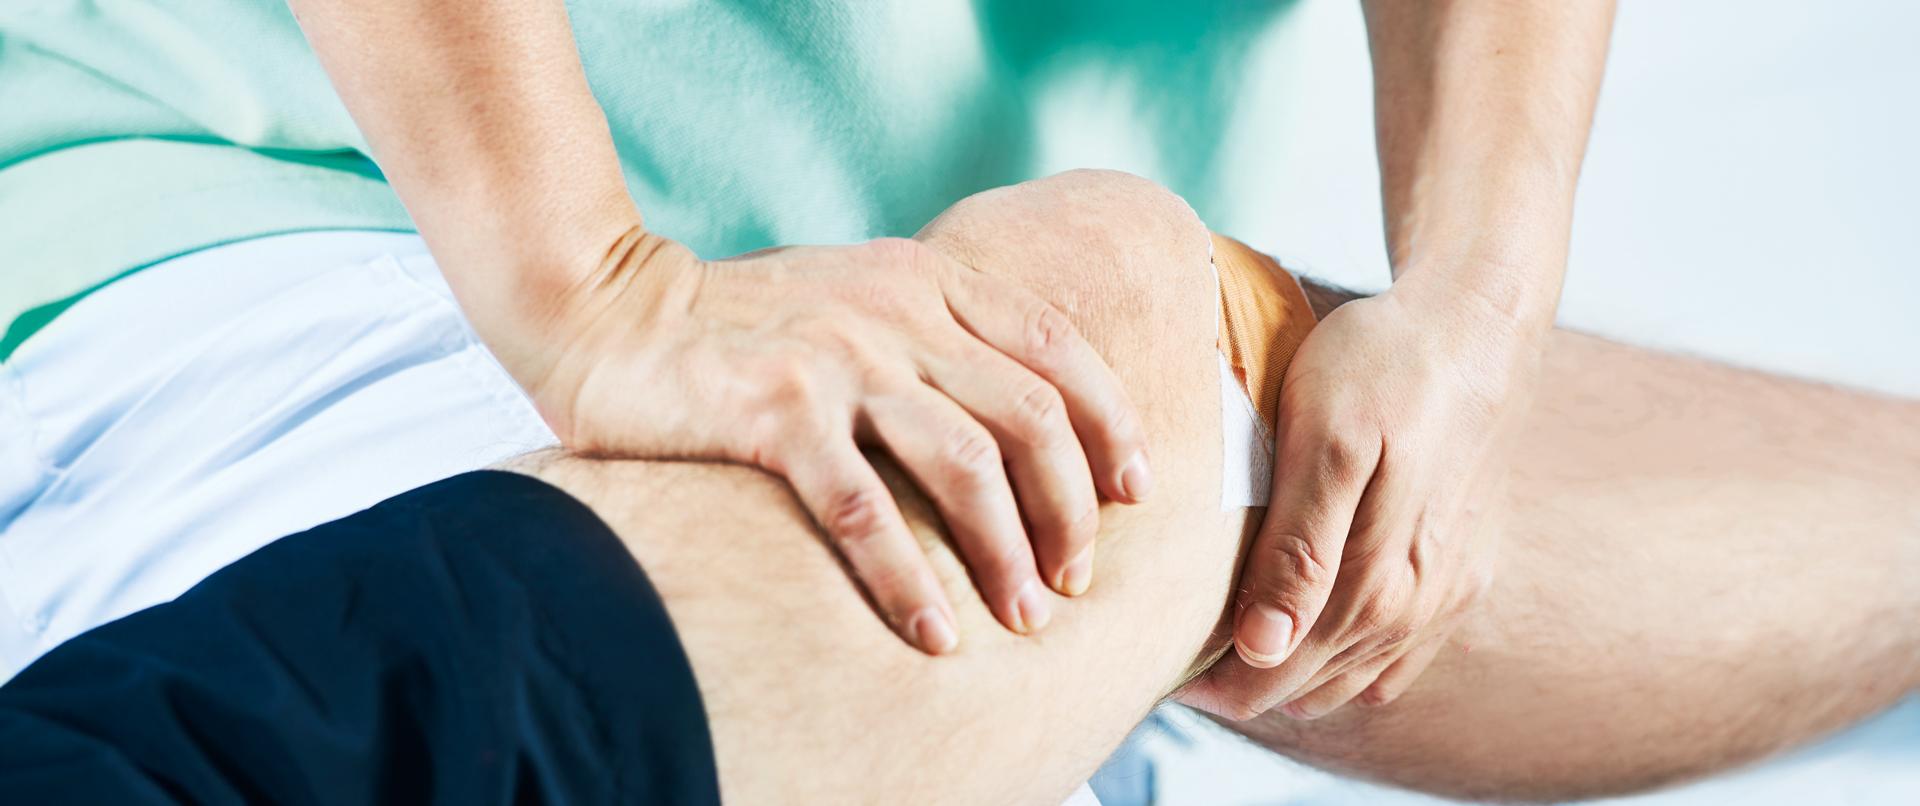 Physiotherapeutin behandelt Knie eines Patienten